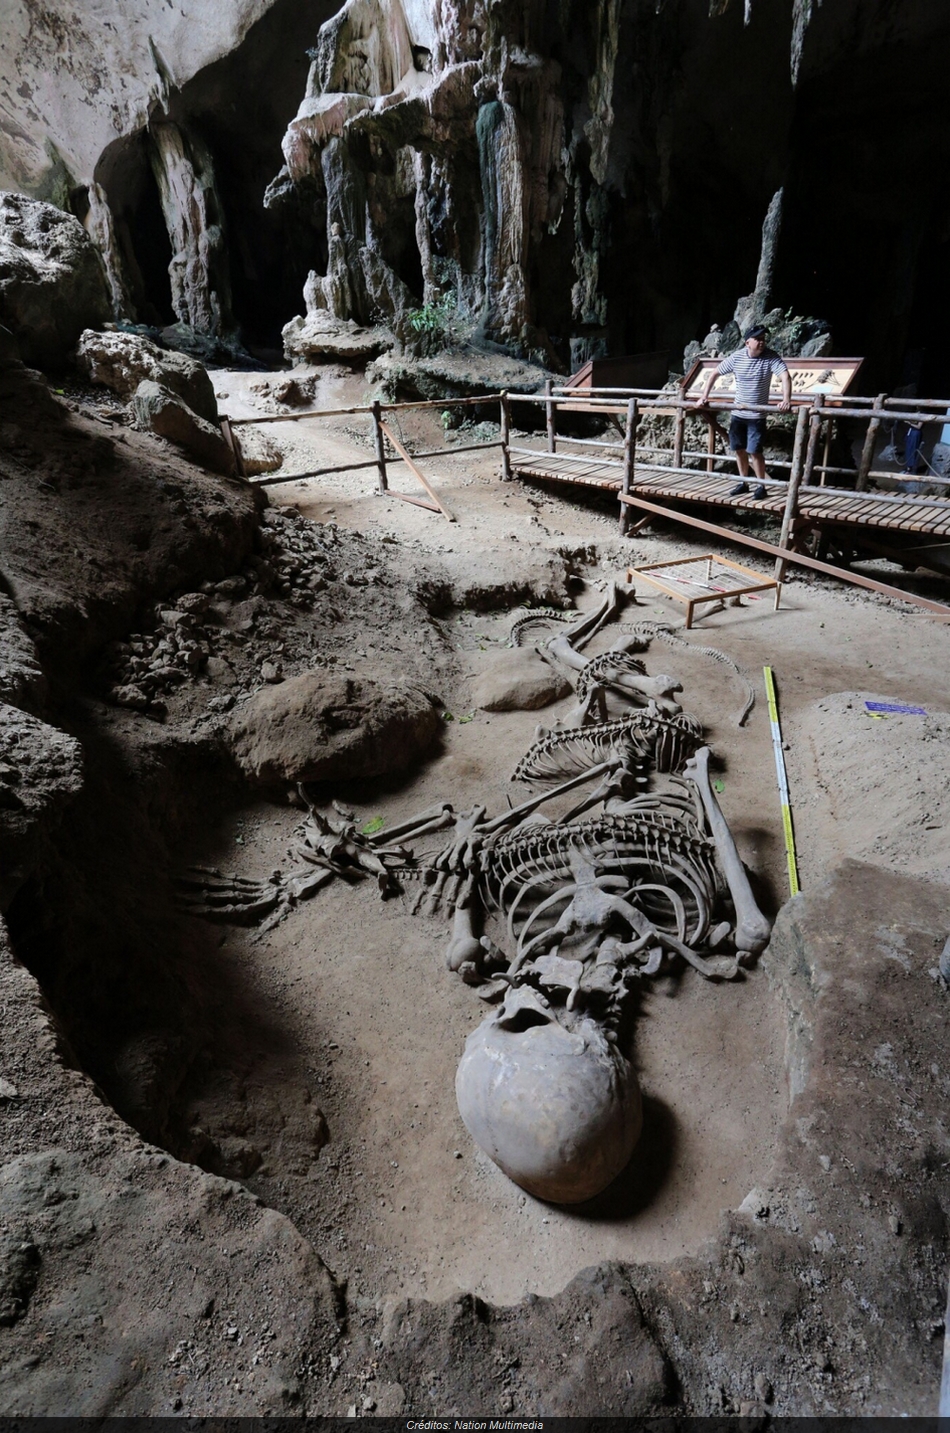 Esqueleto de cobra gigante encontrado no Google Maps agita web 